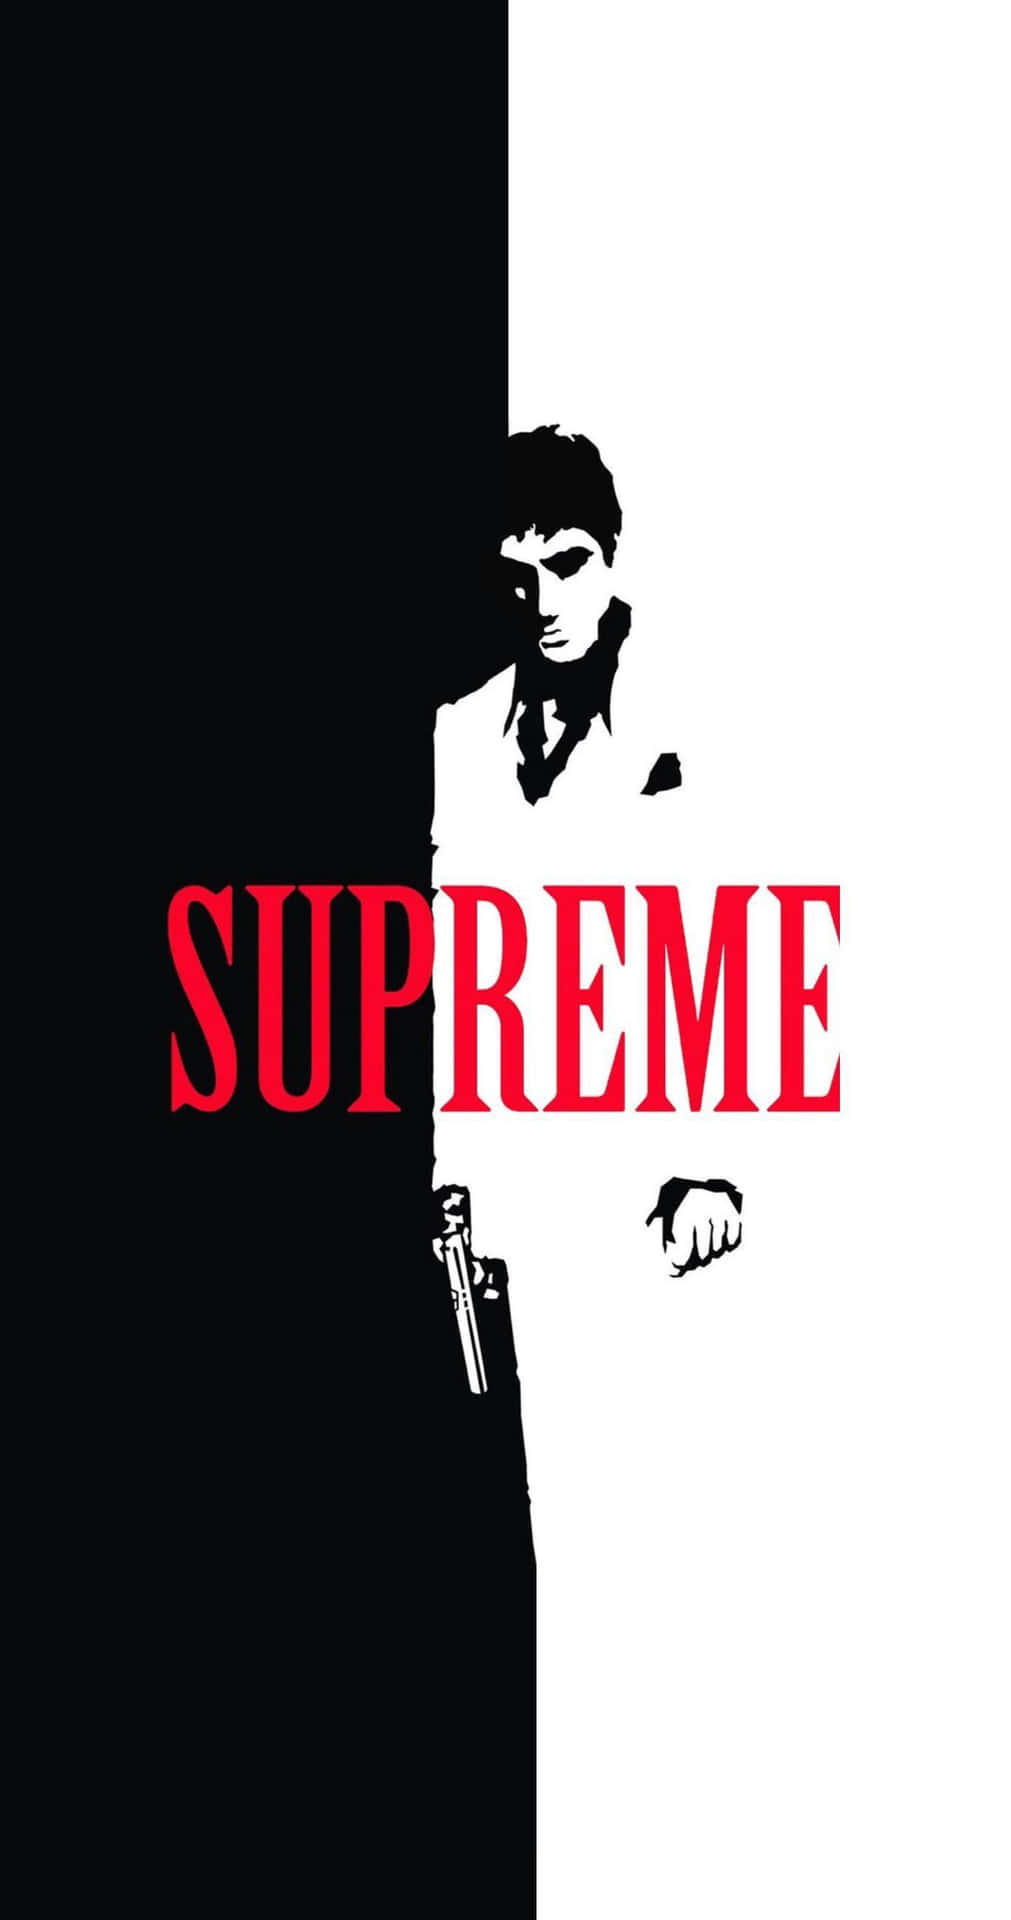 Supreme - A Man With A Gun Wallpaper